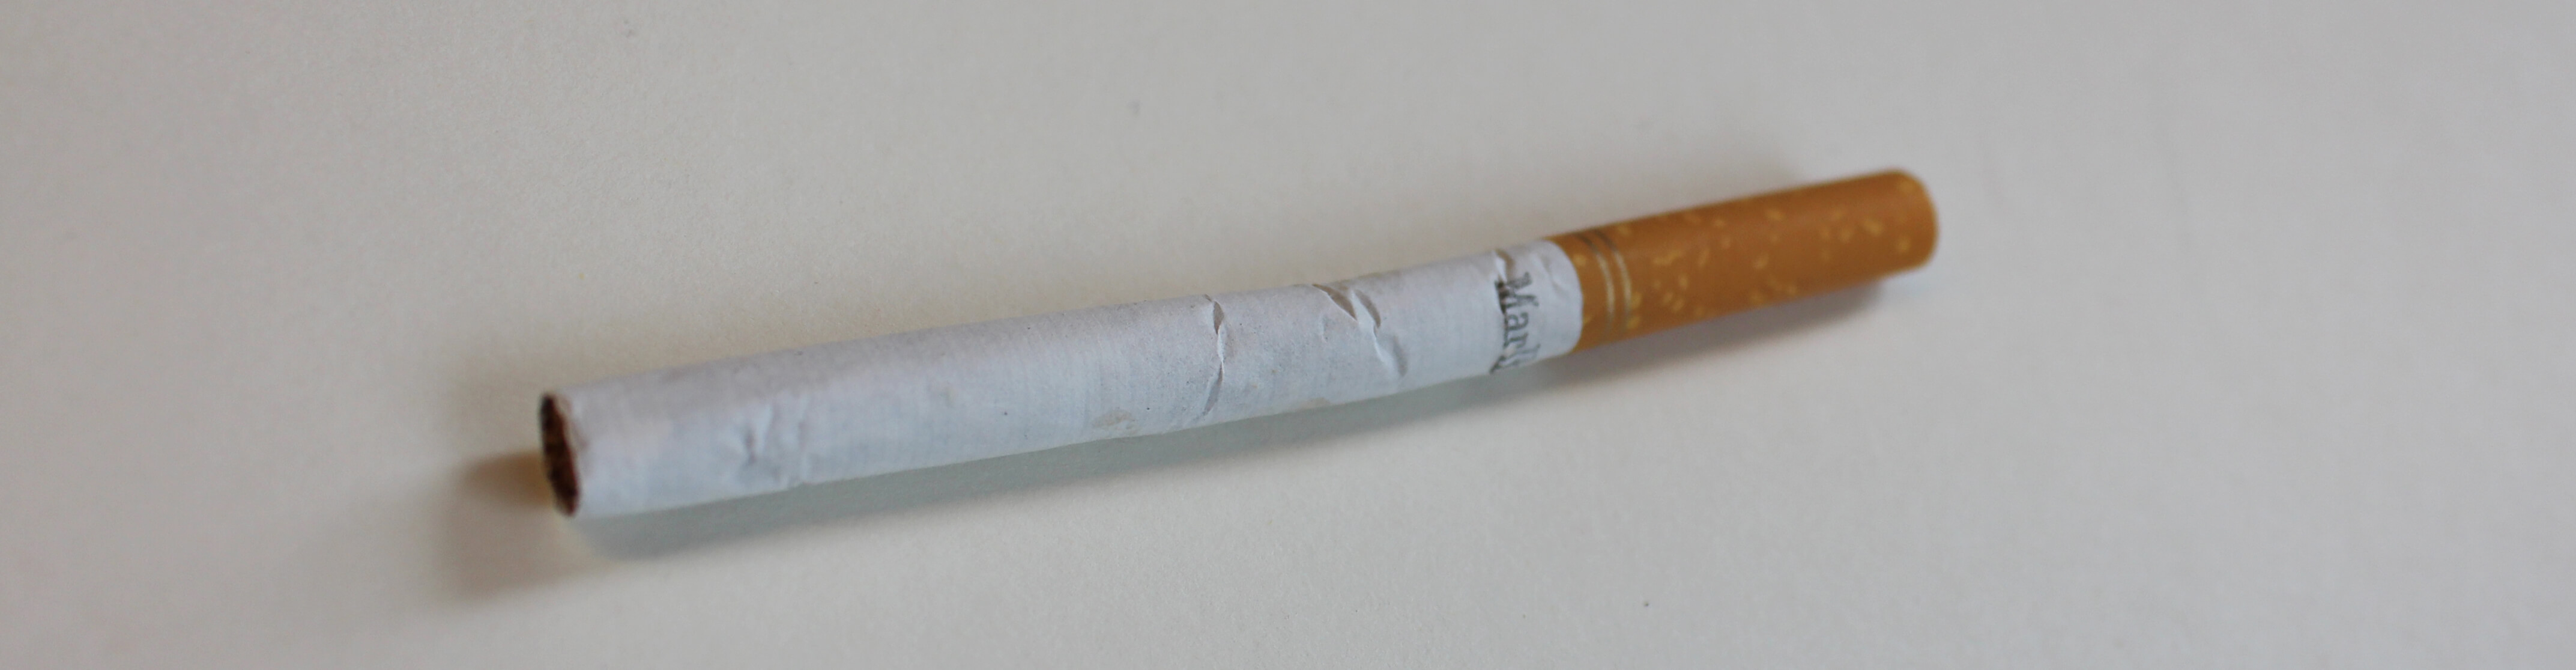 Single Marlboro cigarette